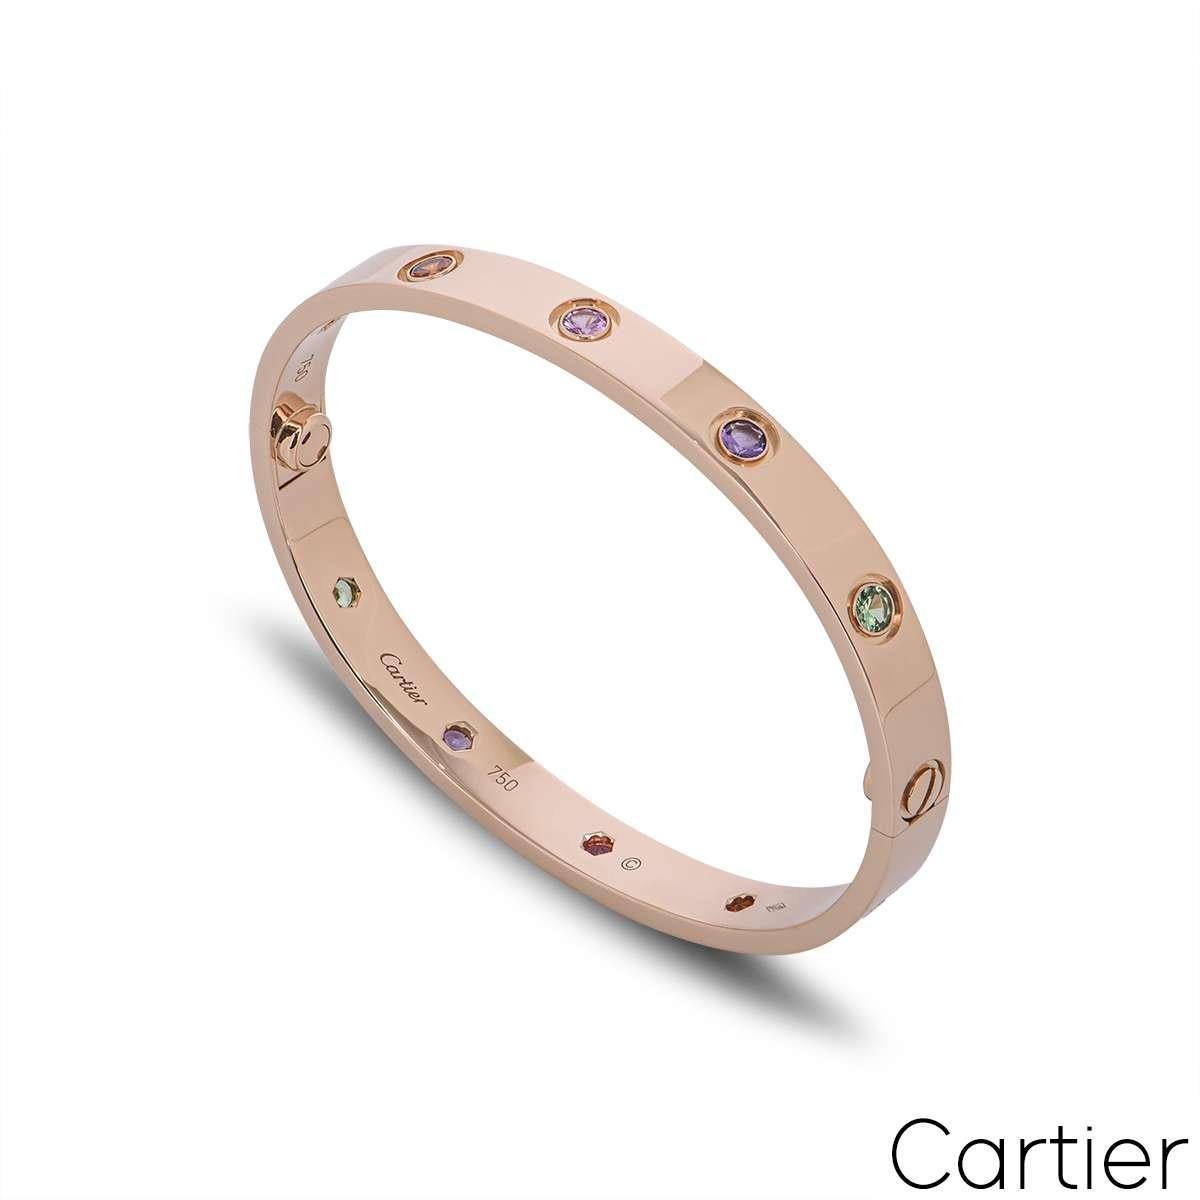 Ein Armband aus 18 Karat Roségold von Cartier aus der Collection'S Love. Besetzt mit 10 farbigen Steinen, darunter rosa und gelbe Saphire, grüne und orangefarbene Granate und Amethyste. Dieses Armband ist mit dem neuen Schraubensystem ausgestattet